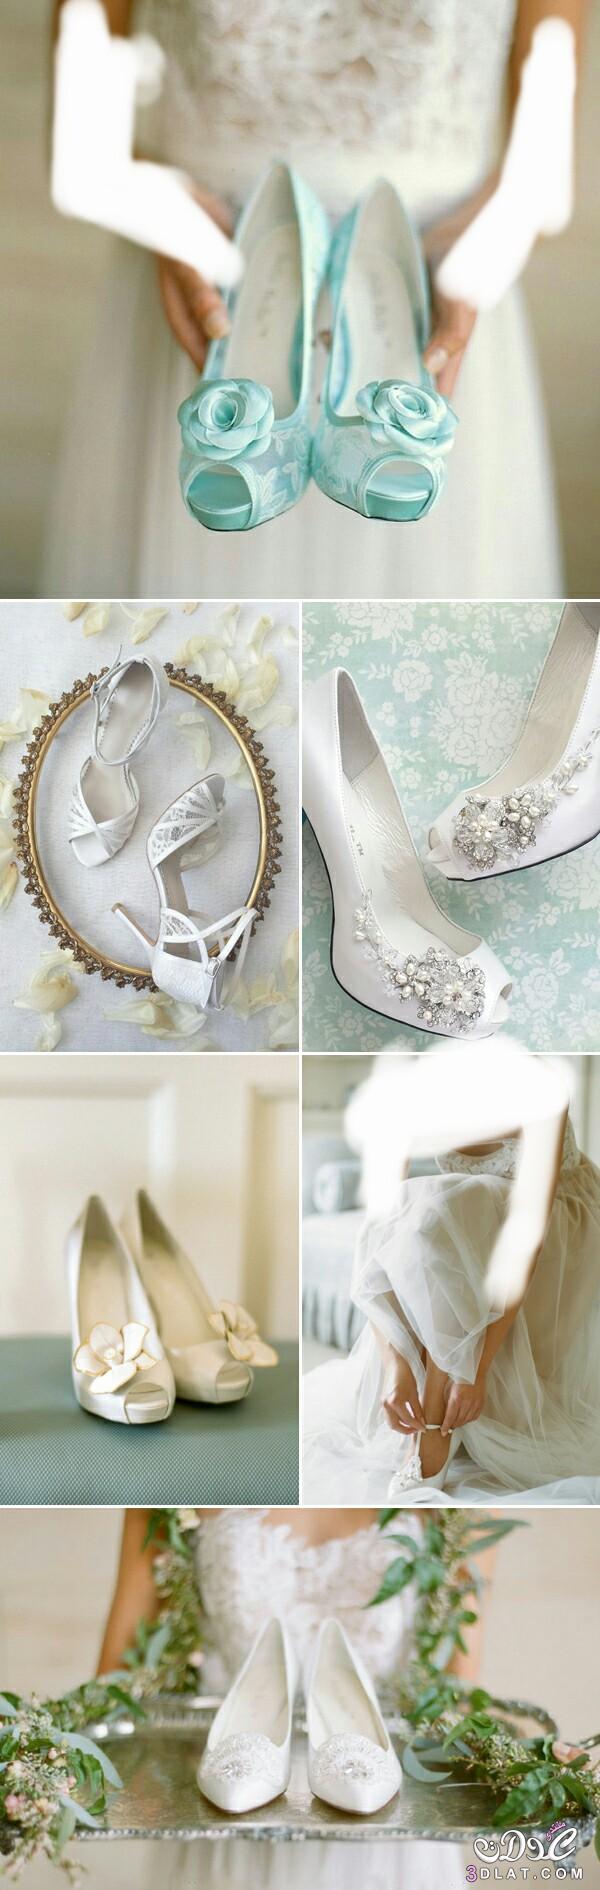 اجمل احذيه للعروس بالكعب العالي ،تصاميم ستدهش الجميع لحذاء العروس